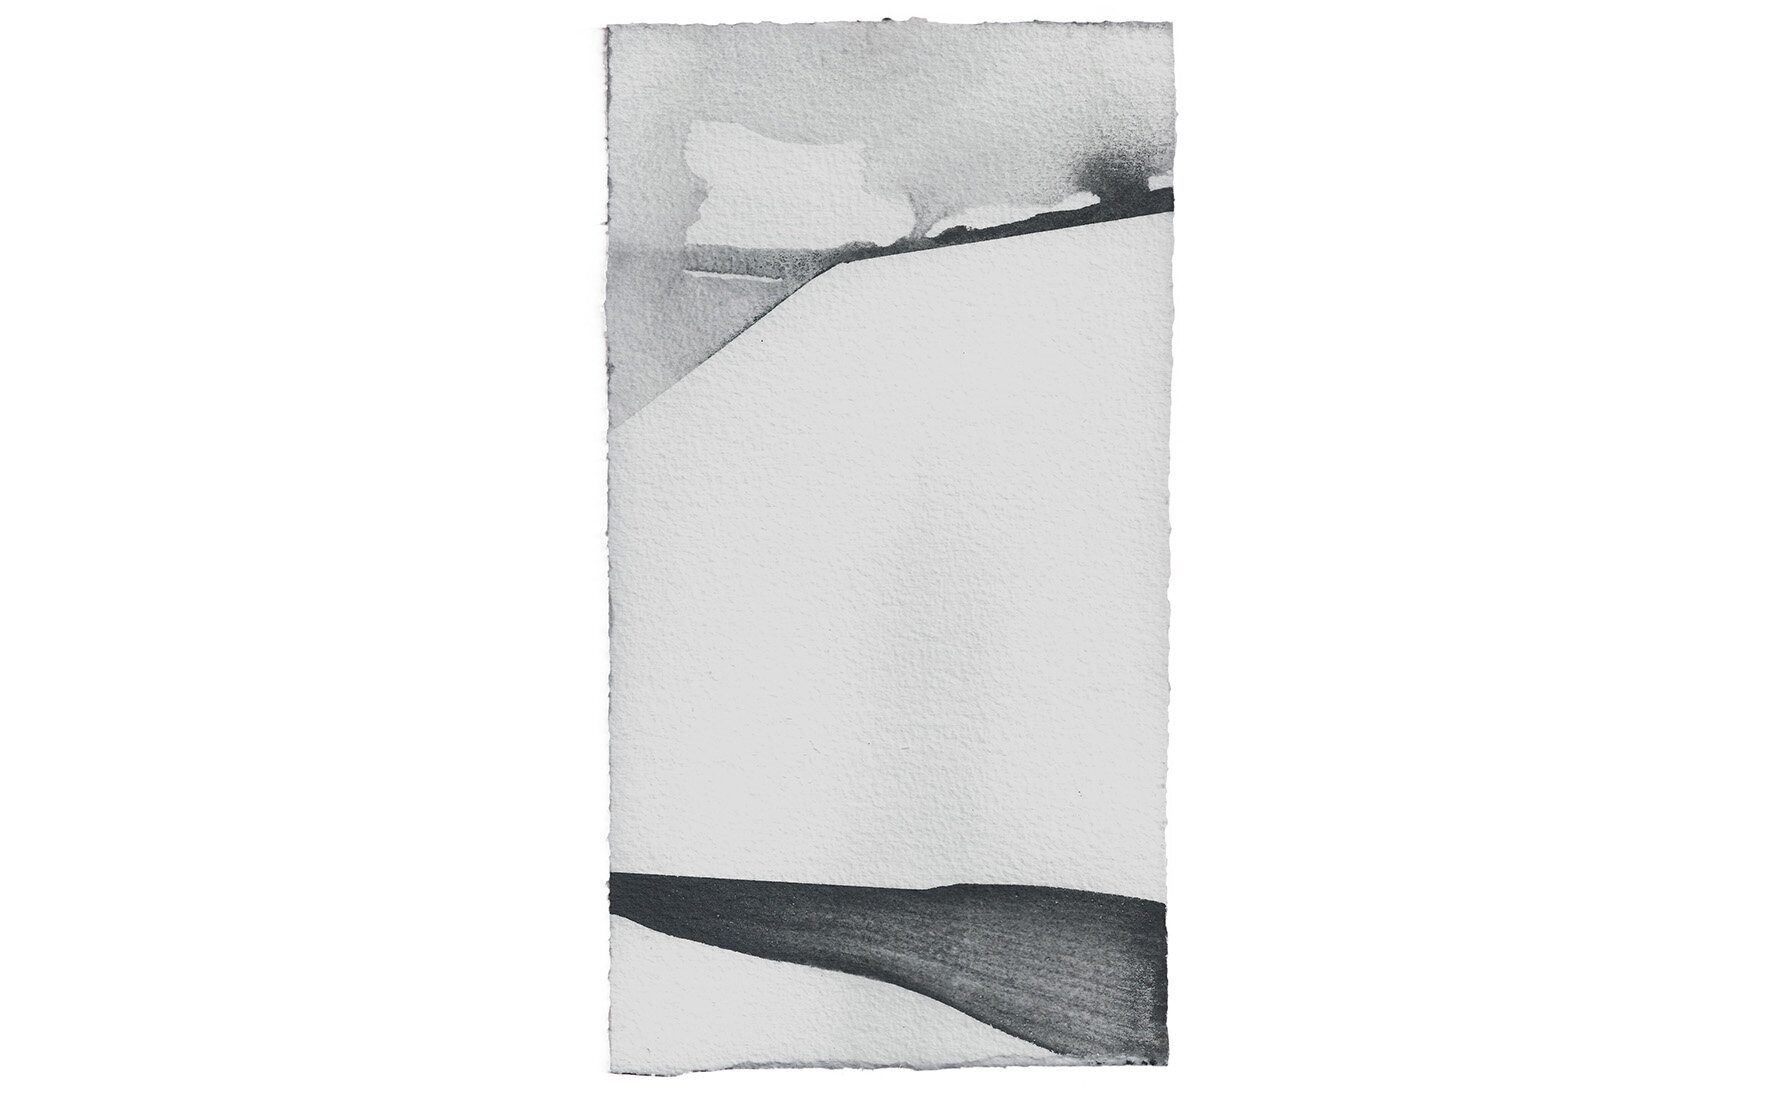   Sem Título, 2019. Grafite sobre papel de aquarela Arches 640g. Cada 26 x 14,5 cm      Untitled, 2019. Graphite on watercolor paper Arches 640g. Each 26 x 14,5cm   